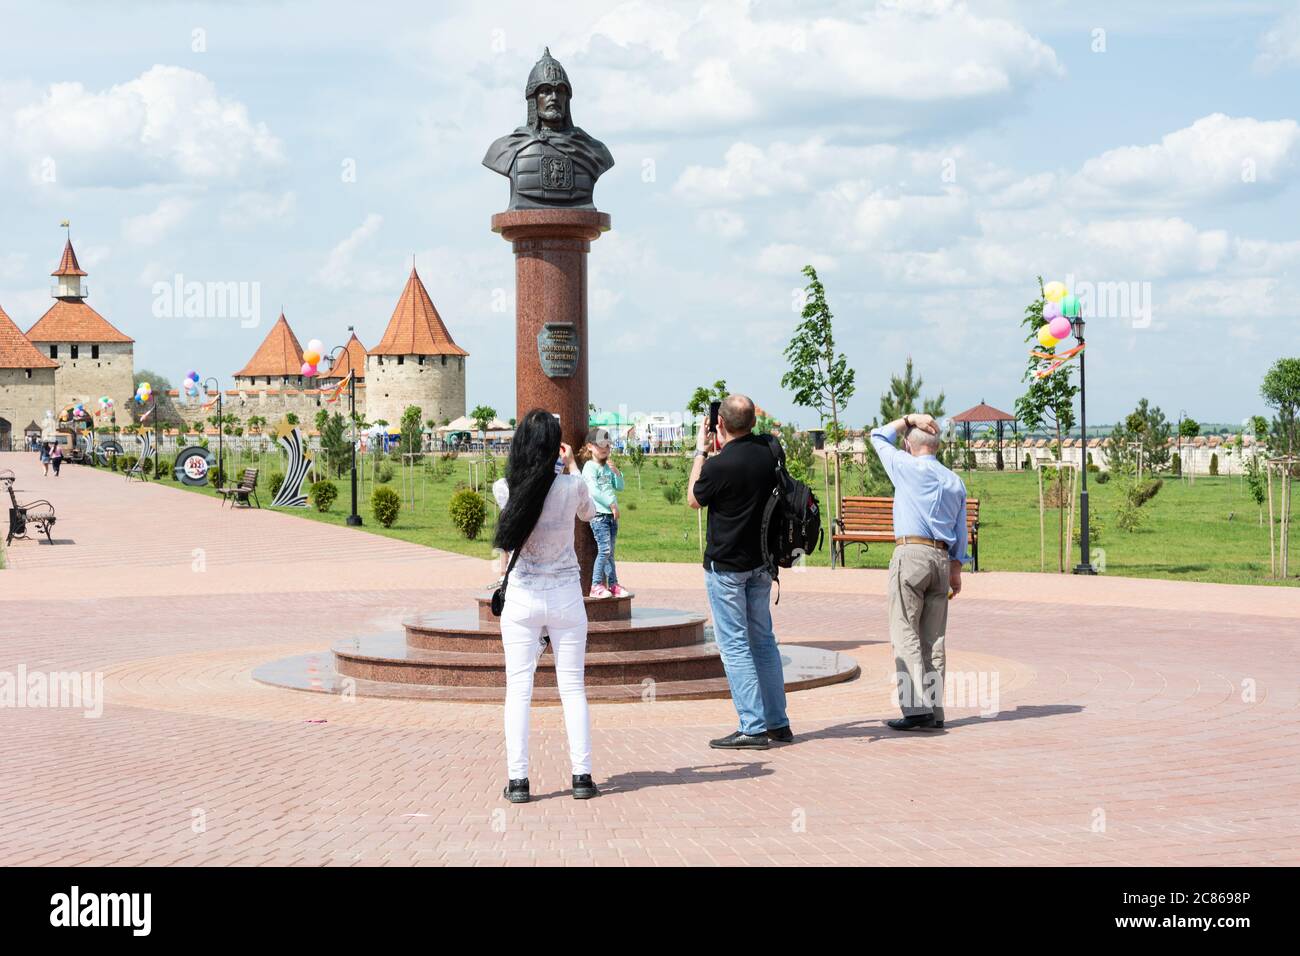 Moldawien, Bender - 18. Mai 2019: Touristen werden vor dem Hintergrund des Denkmals für Alexander Nevsky fotografiert. Moldawien, Osteuropa. Stockfoto